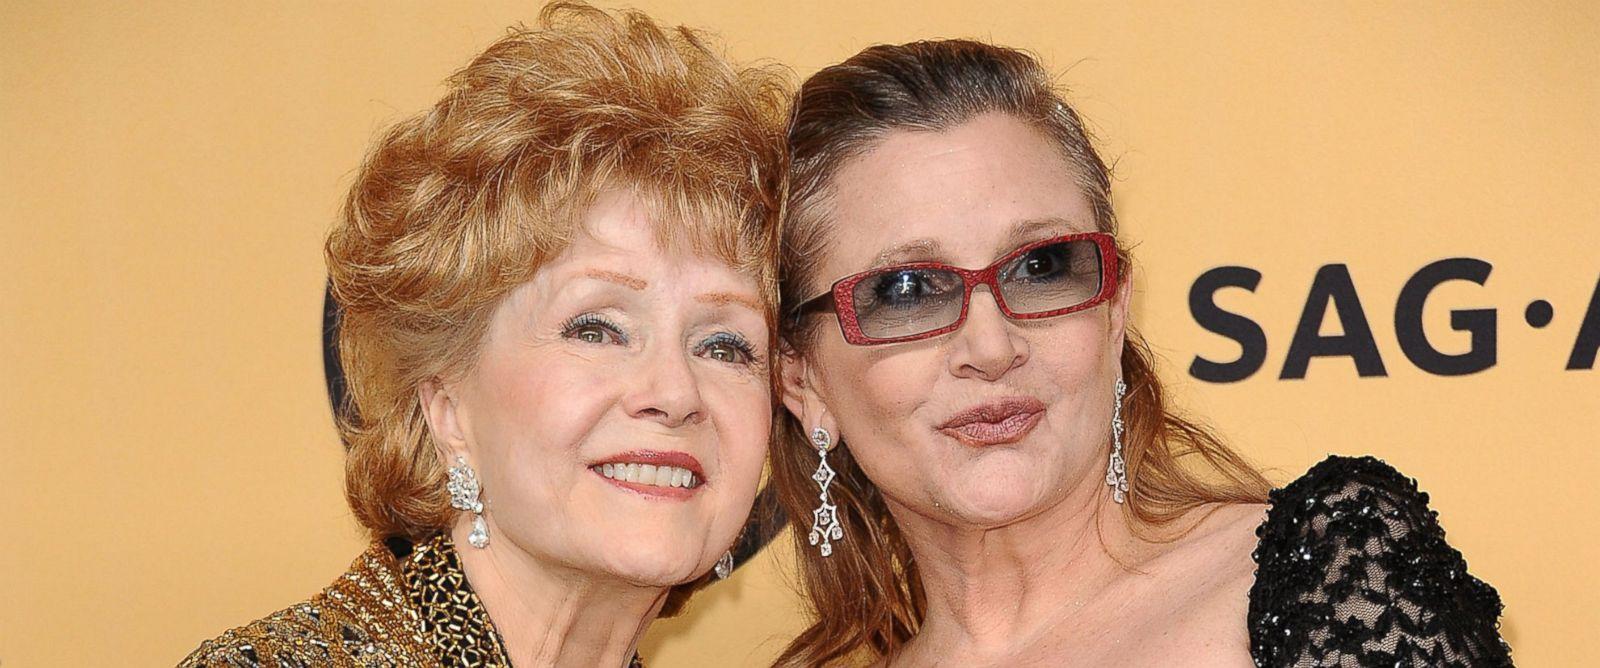 Debbie Reynolds, mãe de Carrie Fisher, é hospitalizada